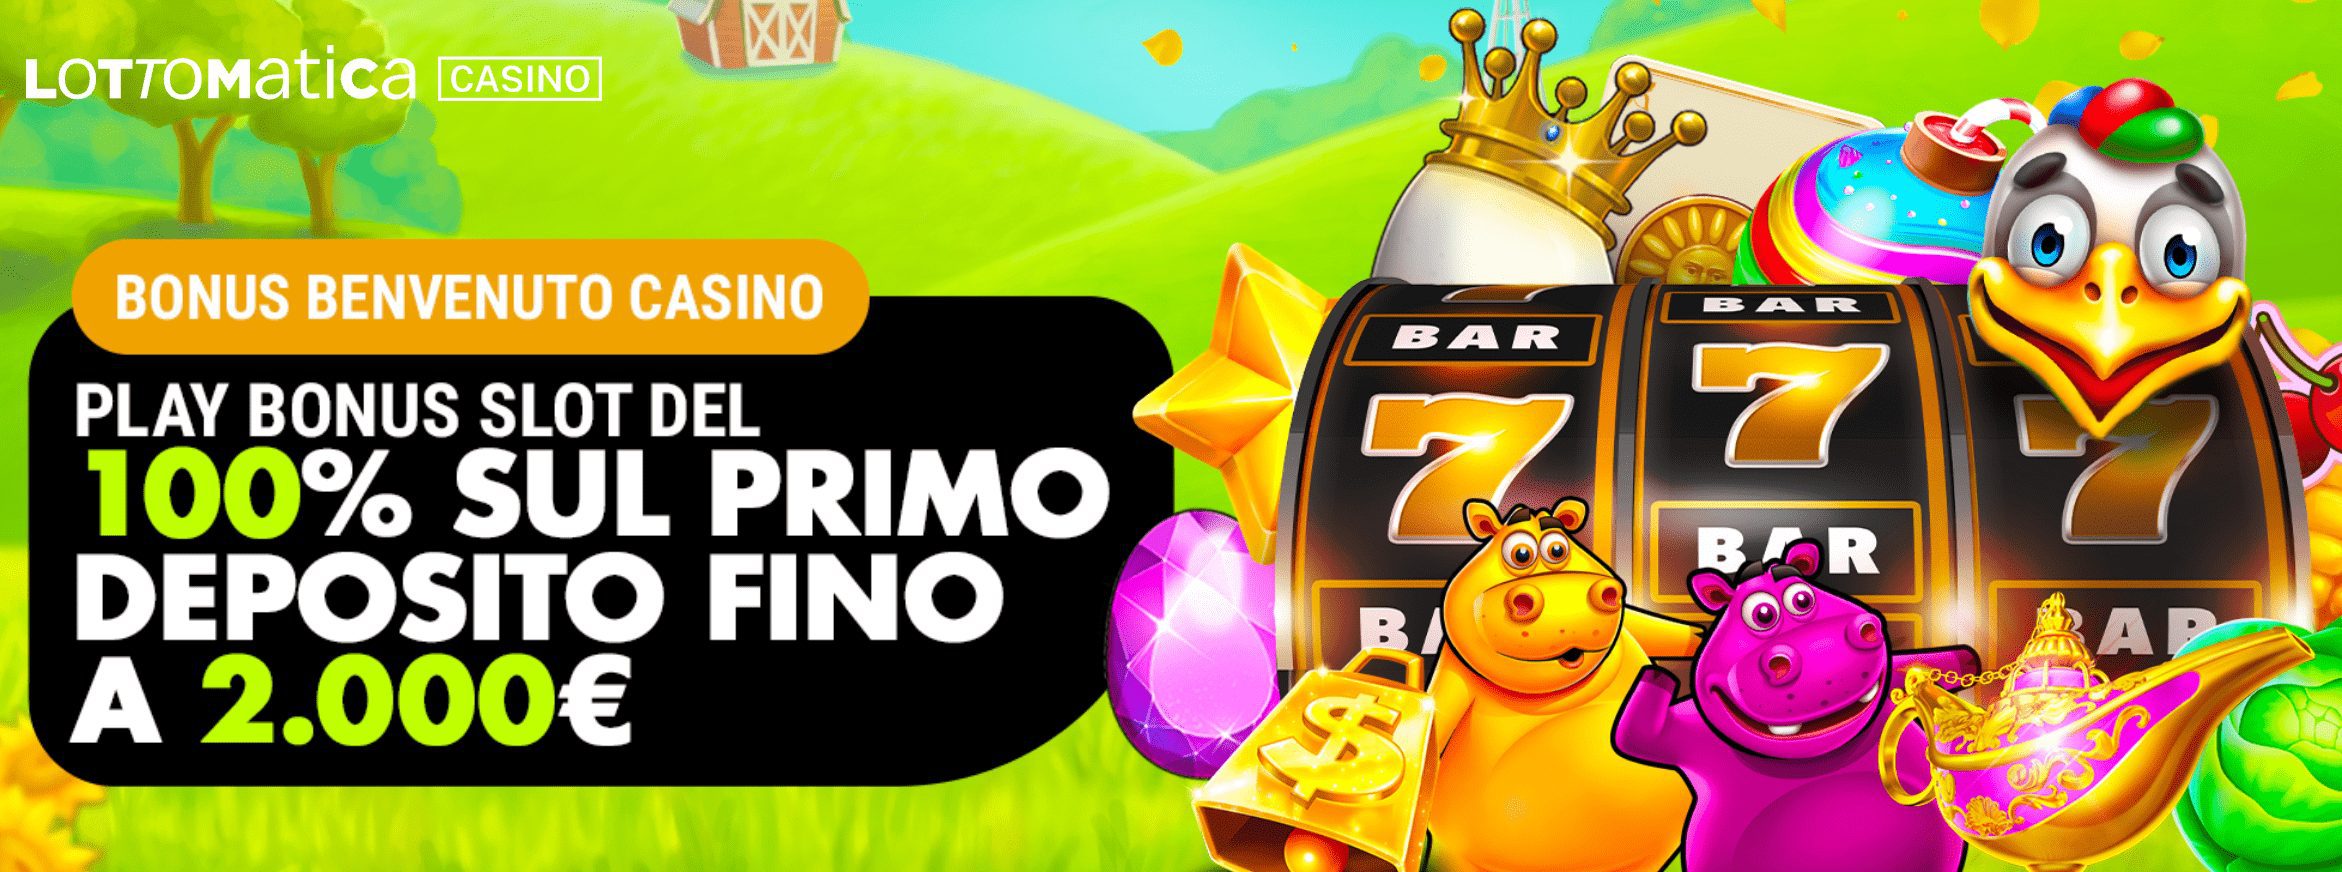 Lottomatica Casino Bonus Benvenuto